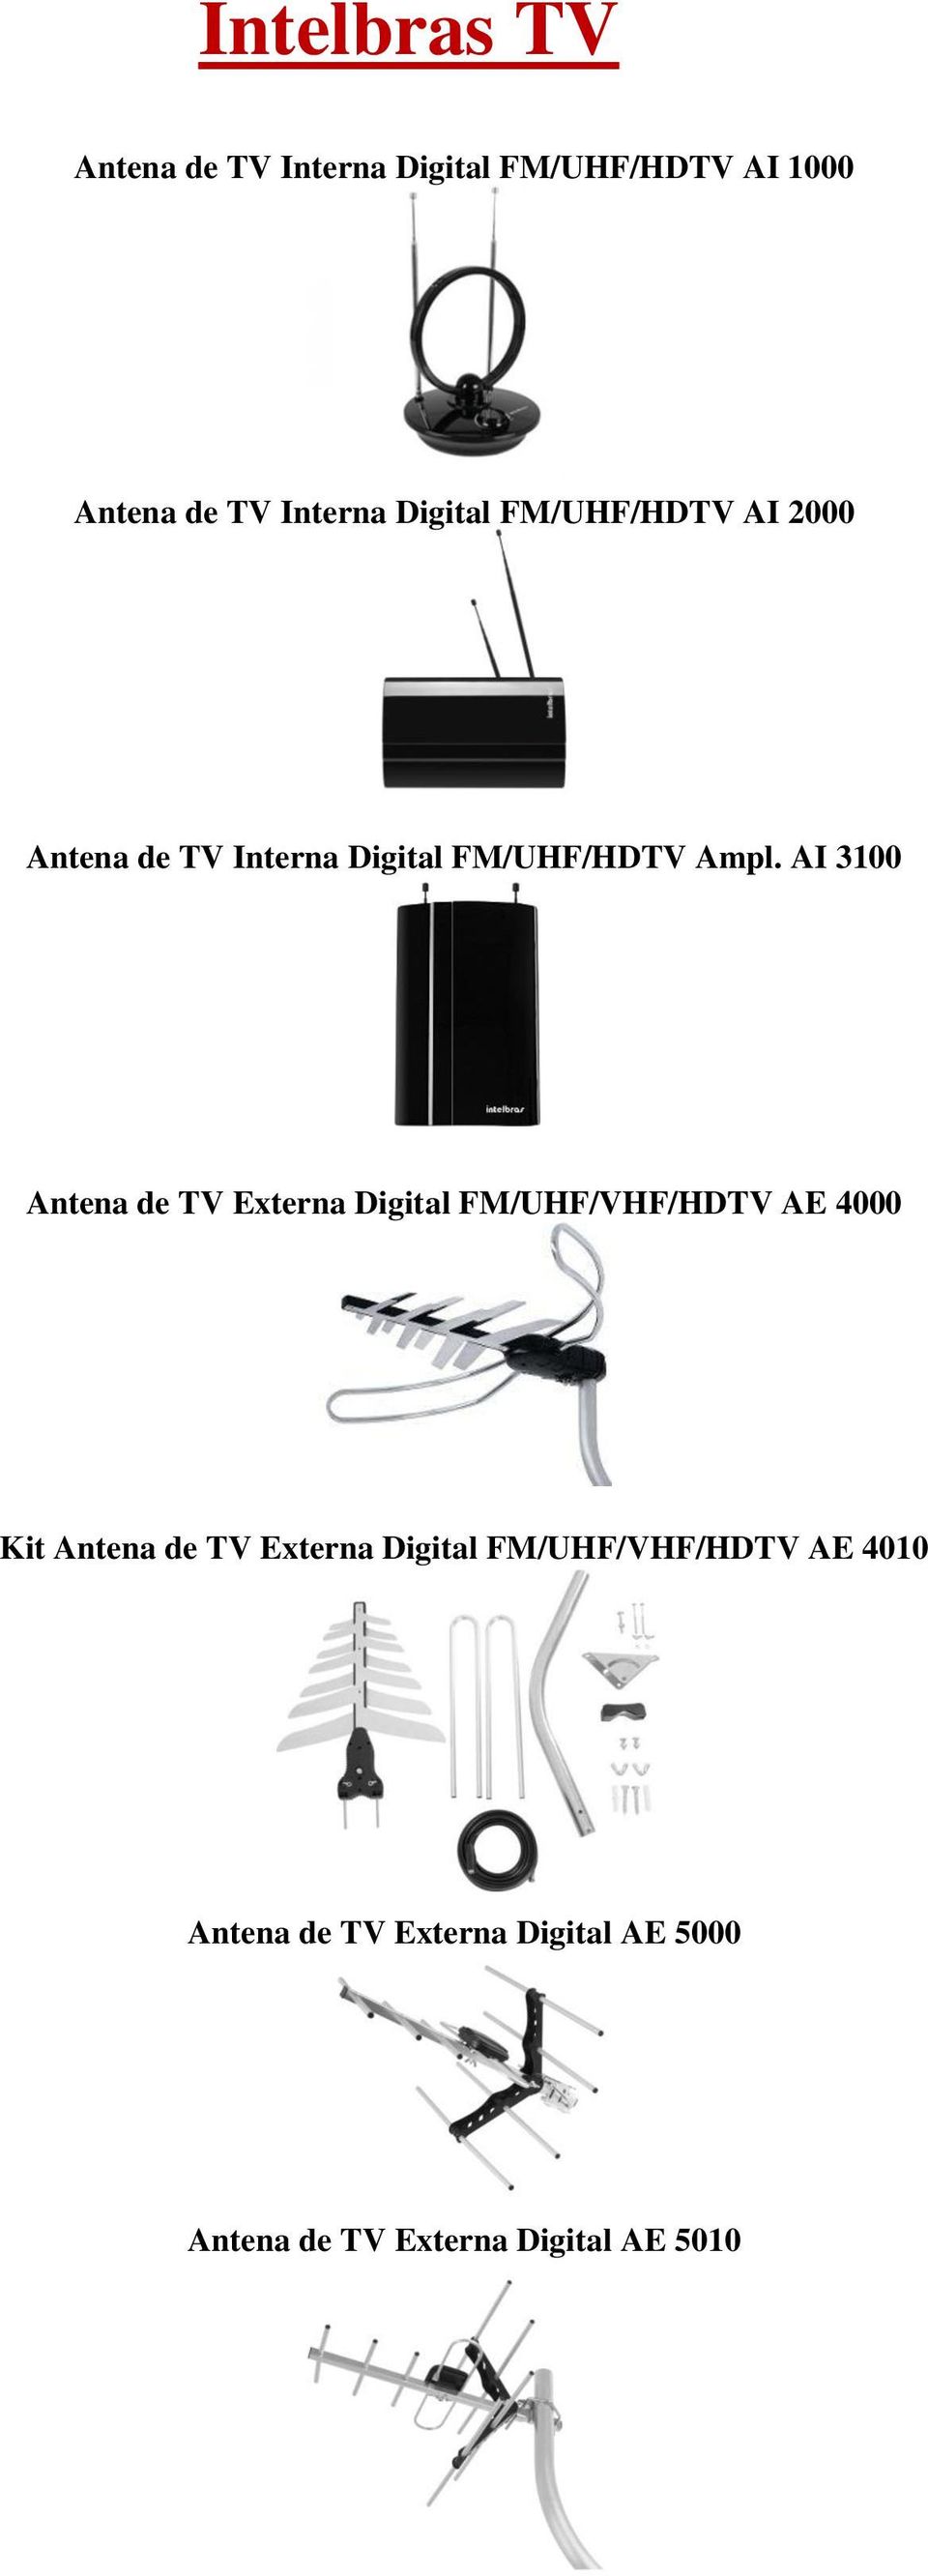 Antena de TV Externa Digital Intelbras AE 4010